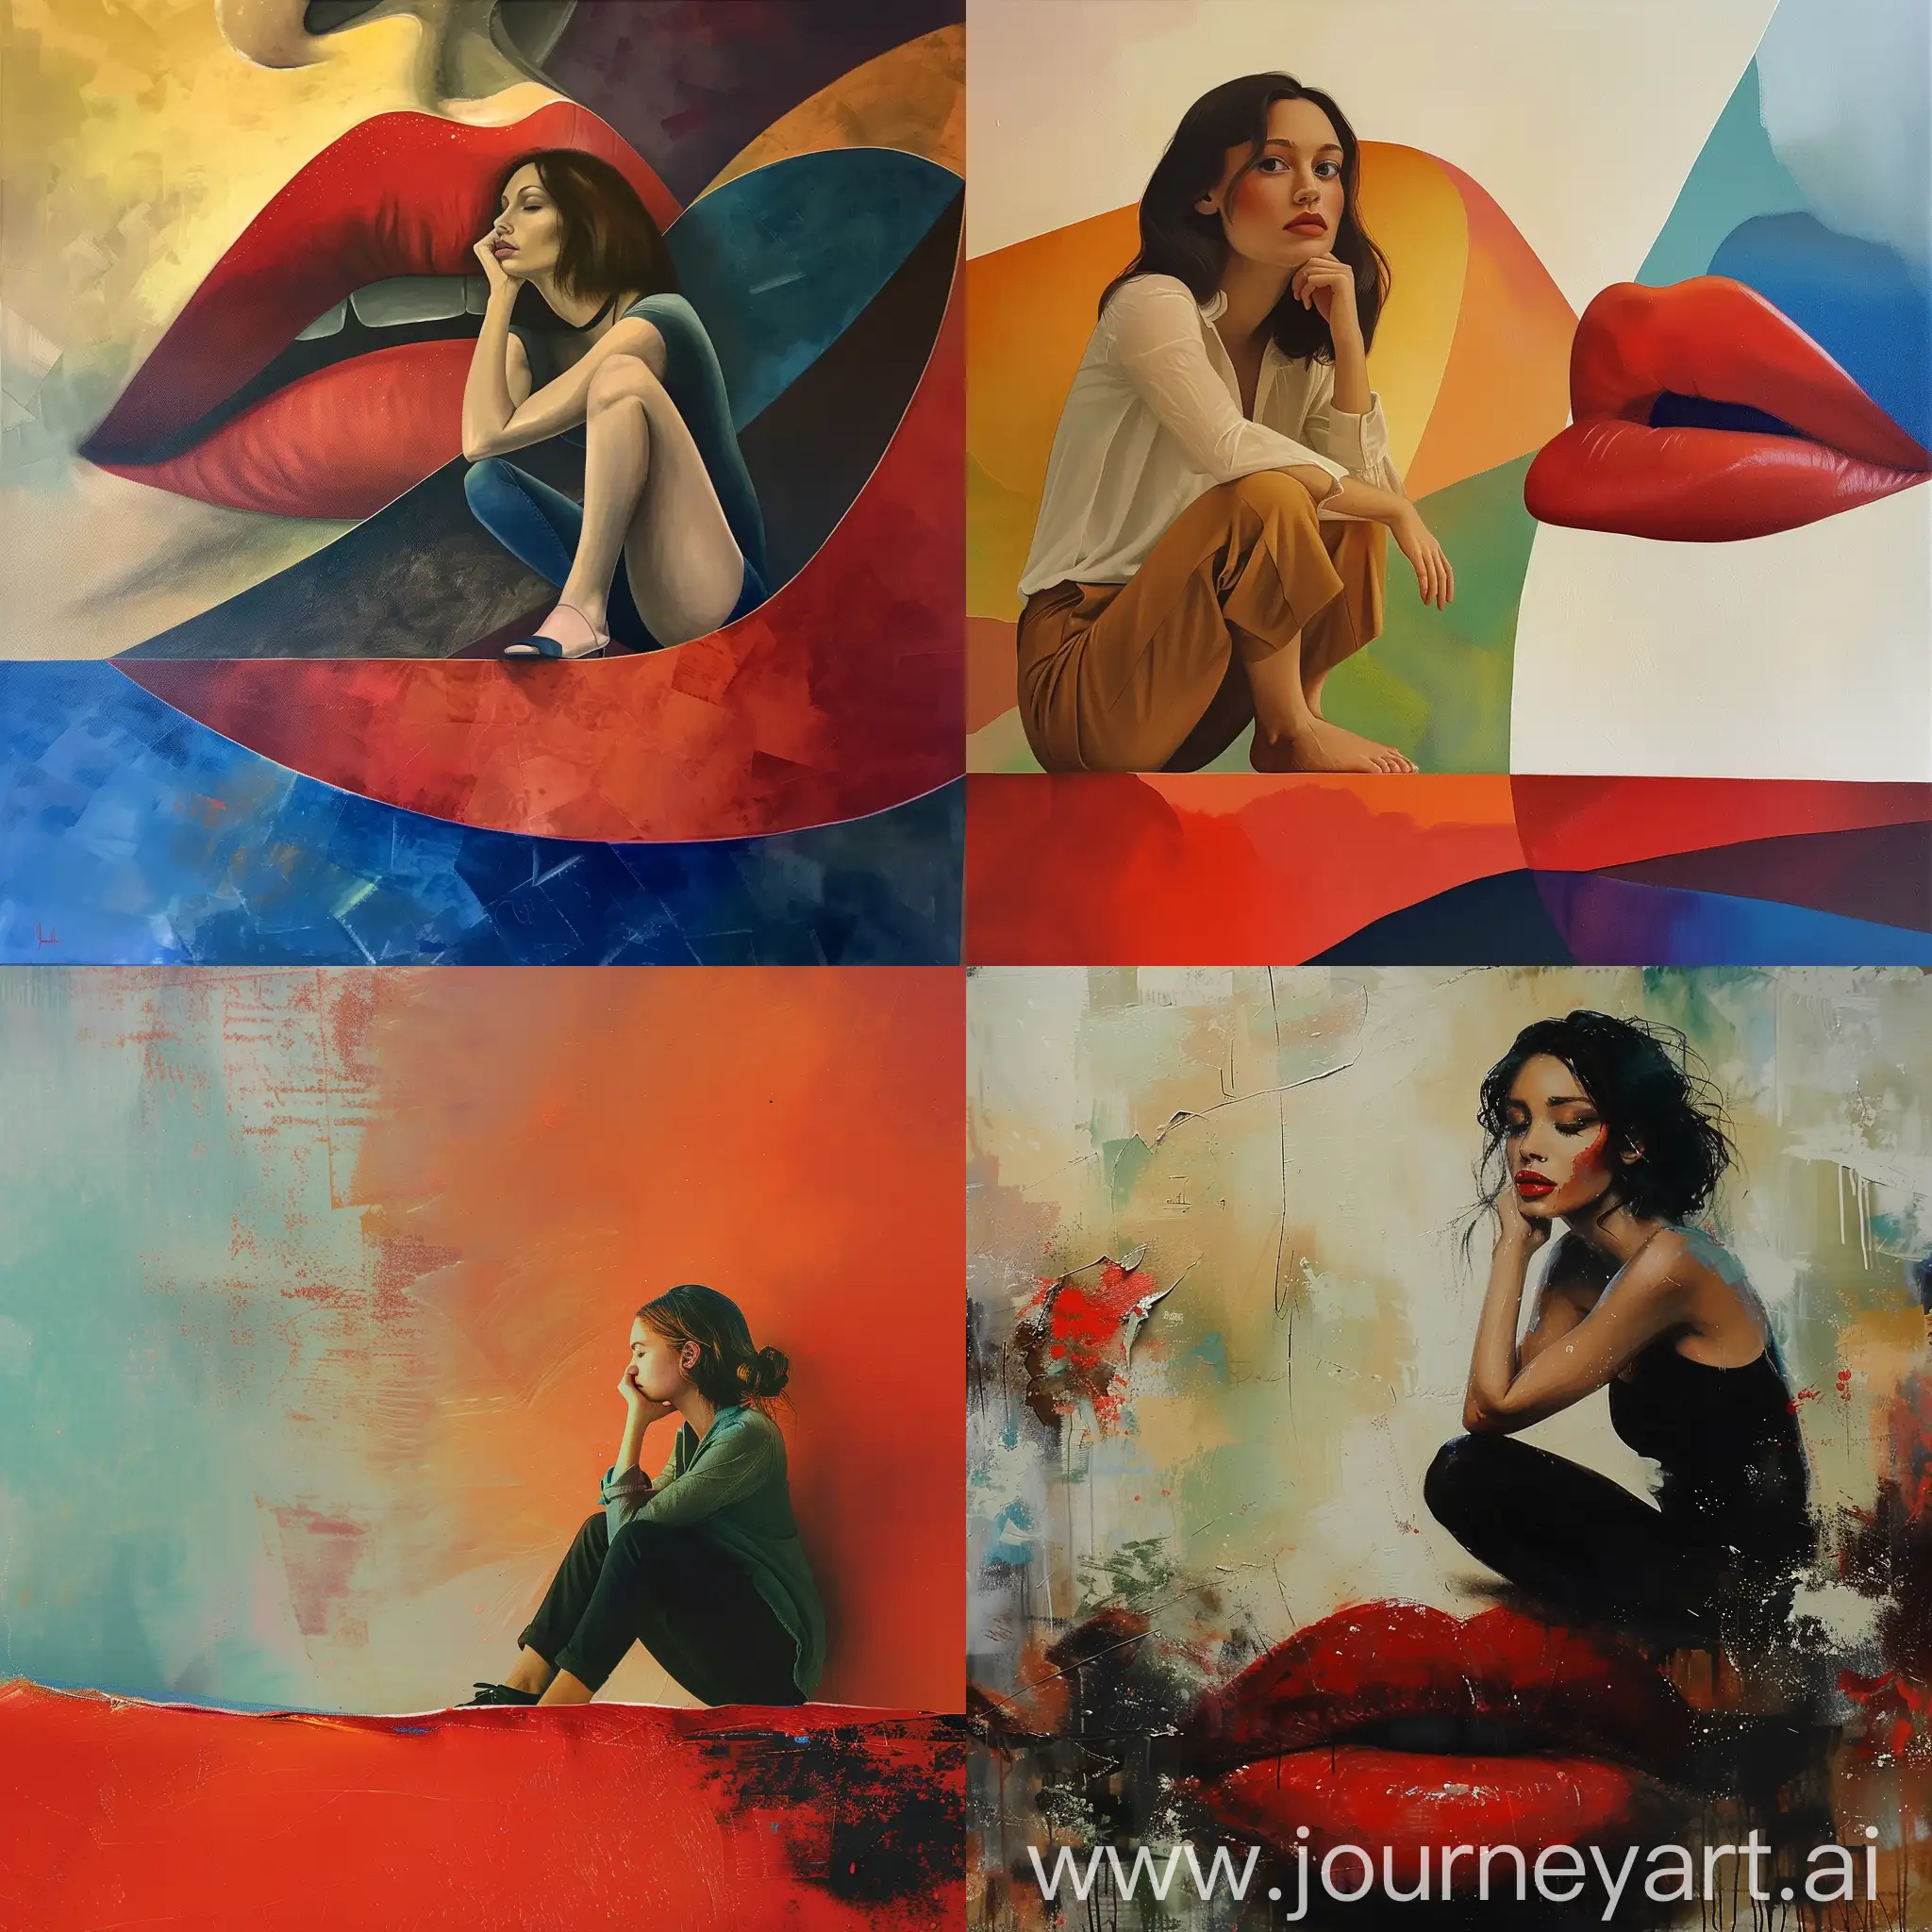 W głębi myśli siedzi kobieta na brzegu czerwonych ust. Abstrakcyjna kompozycja kolorów.